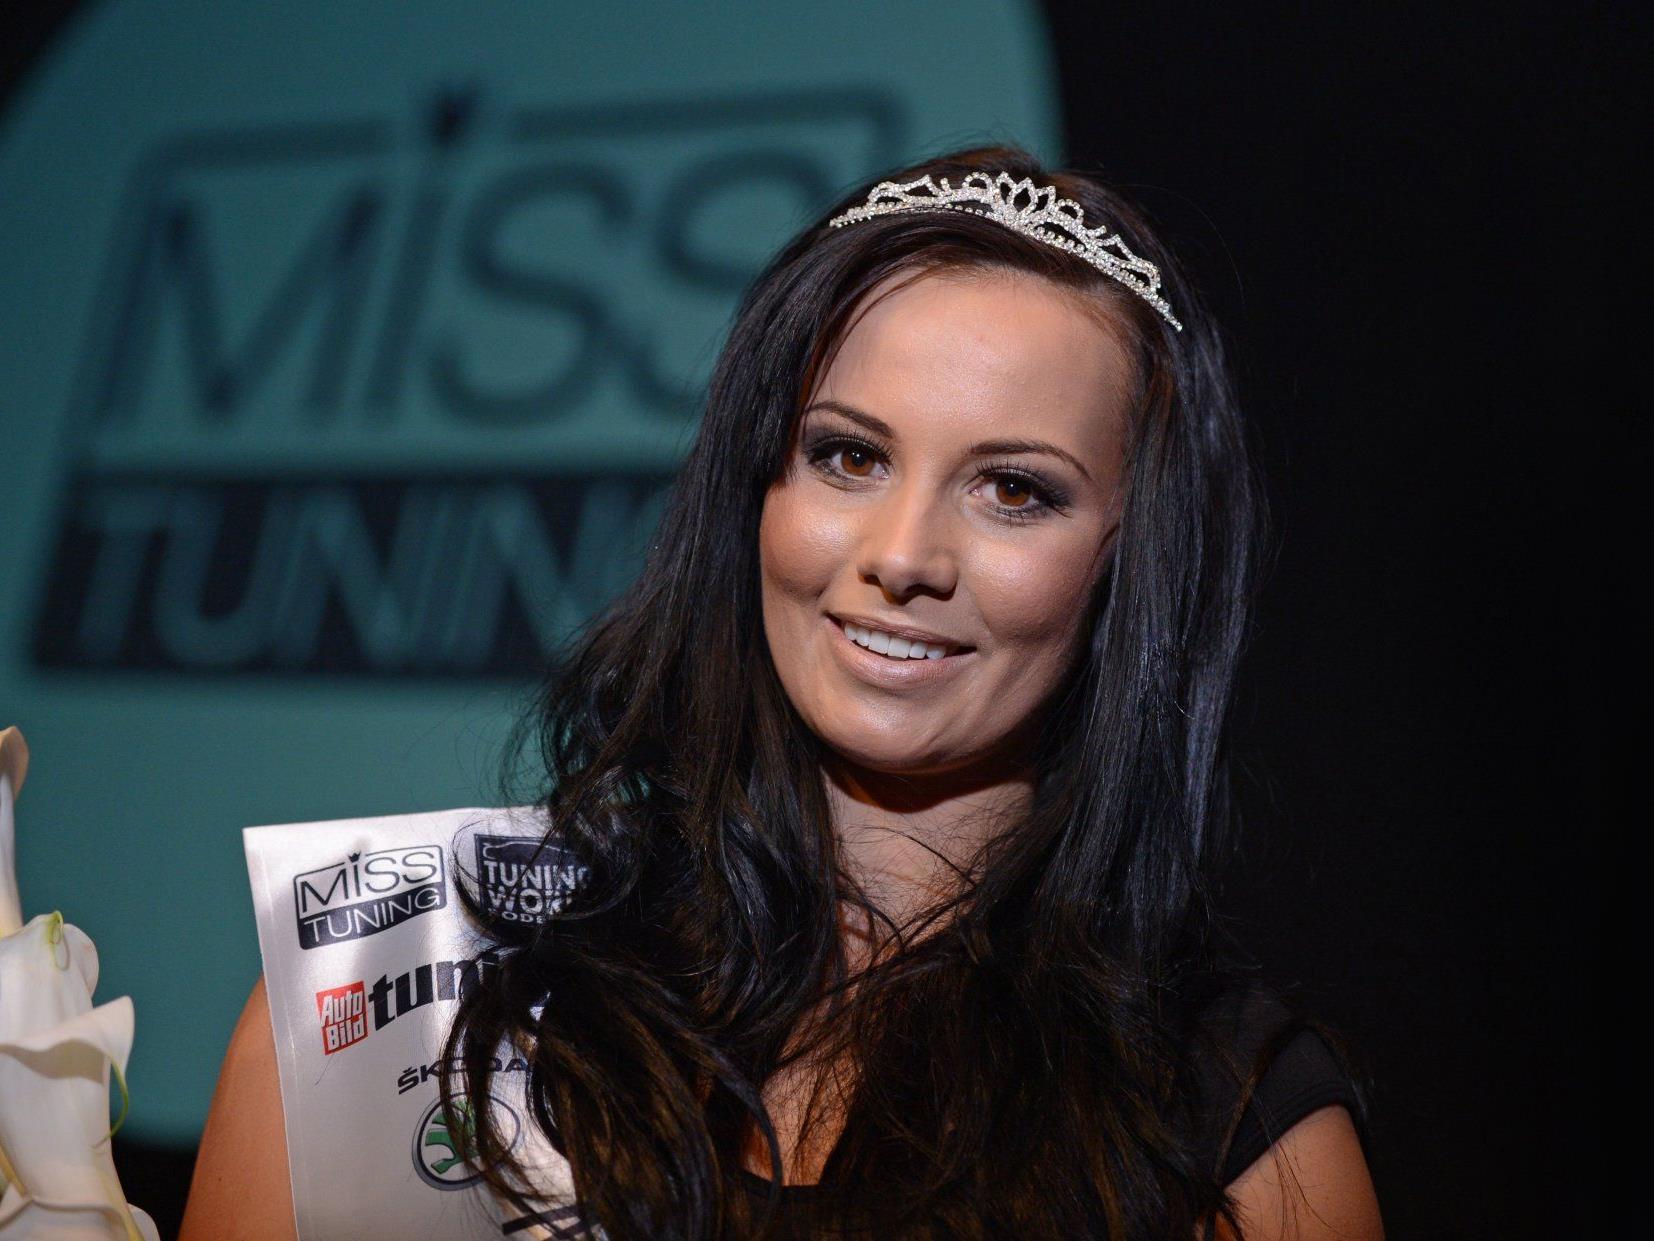 Die heißesten Kurven wurden gekürt - Frizzi Arnold ist die neue Miss Tuning 2012